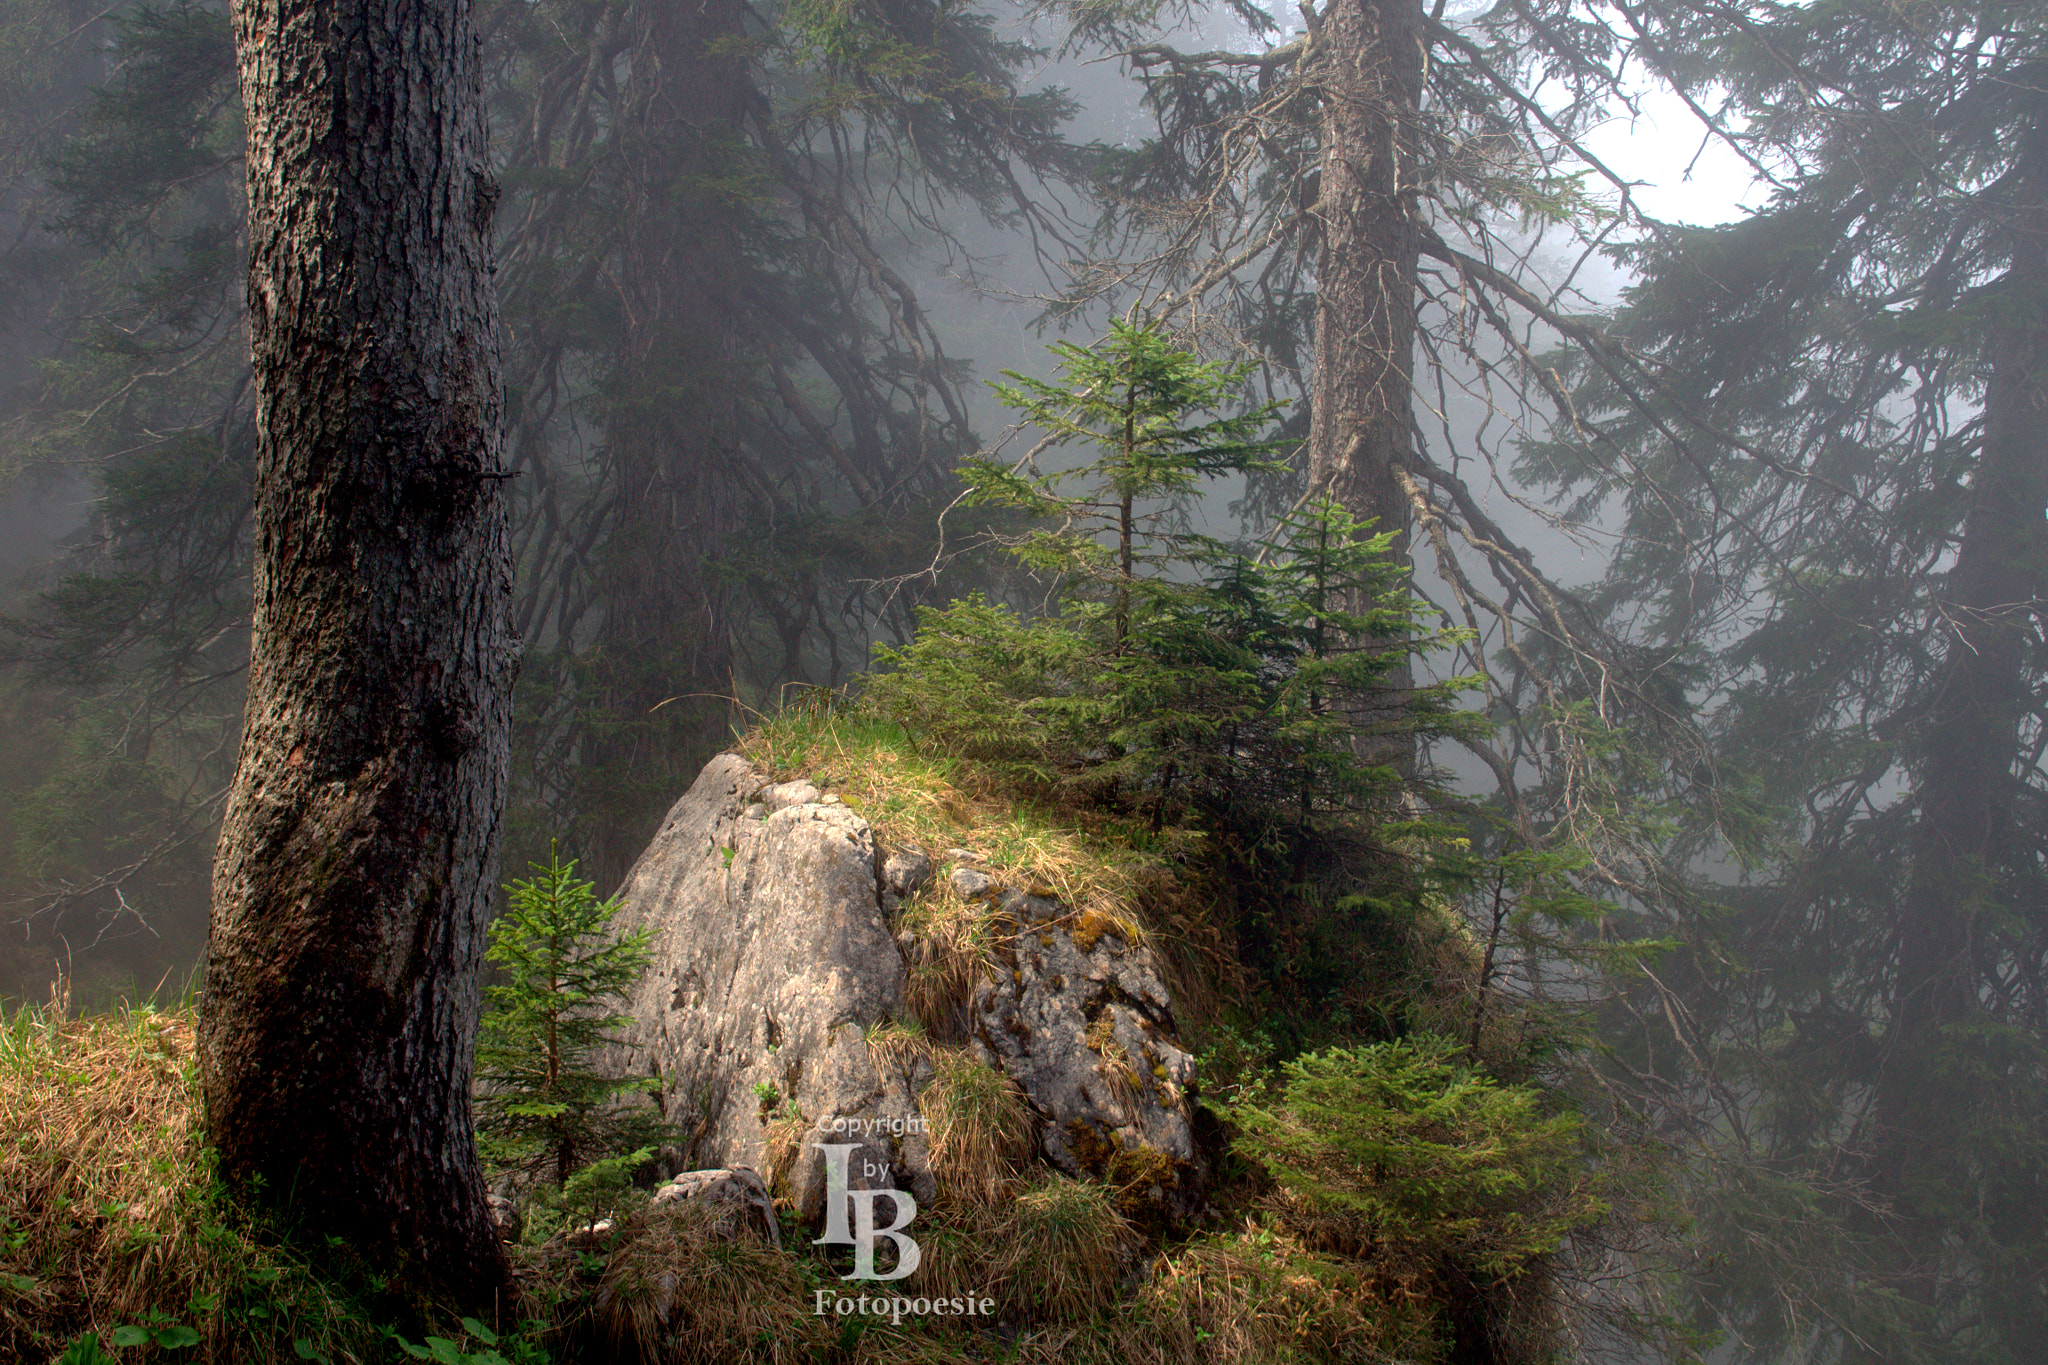 Sony Alpha DSLR-A450 sample photo. Fairytale forest photography